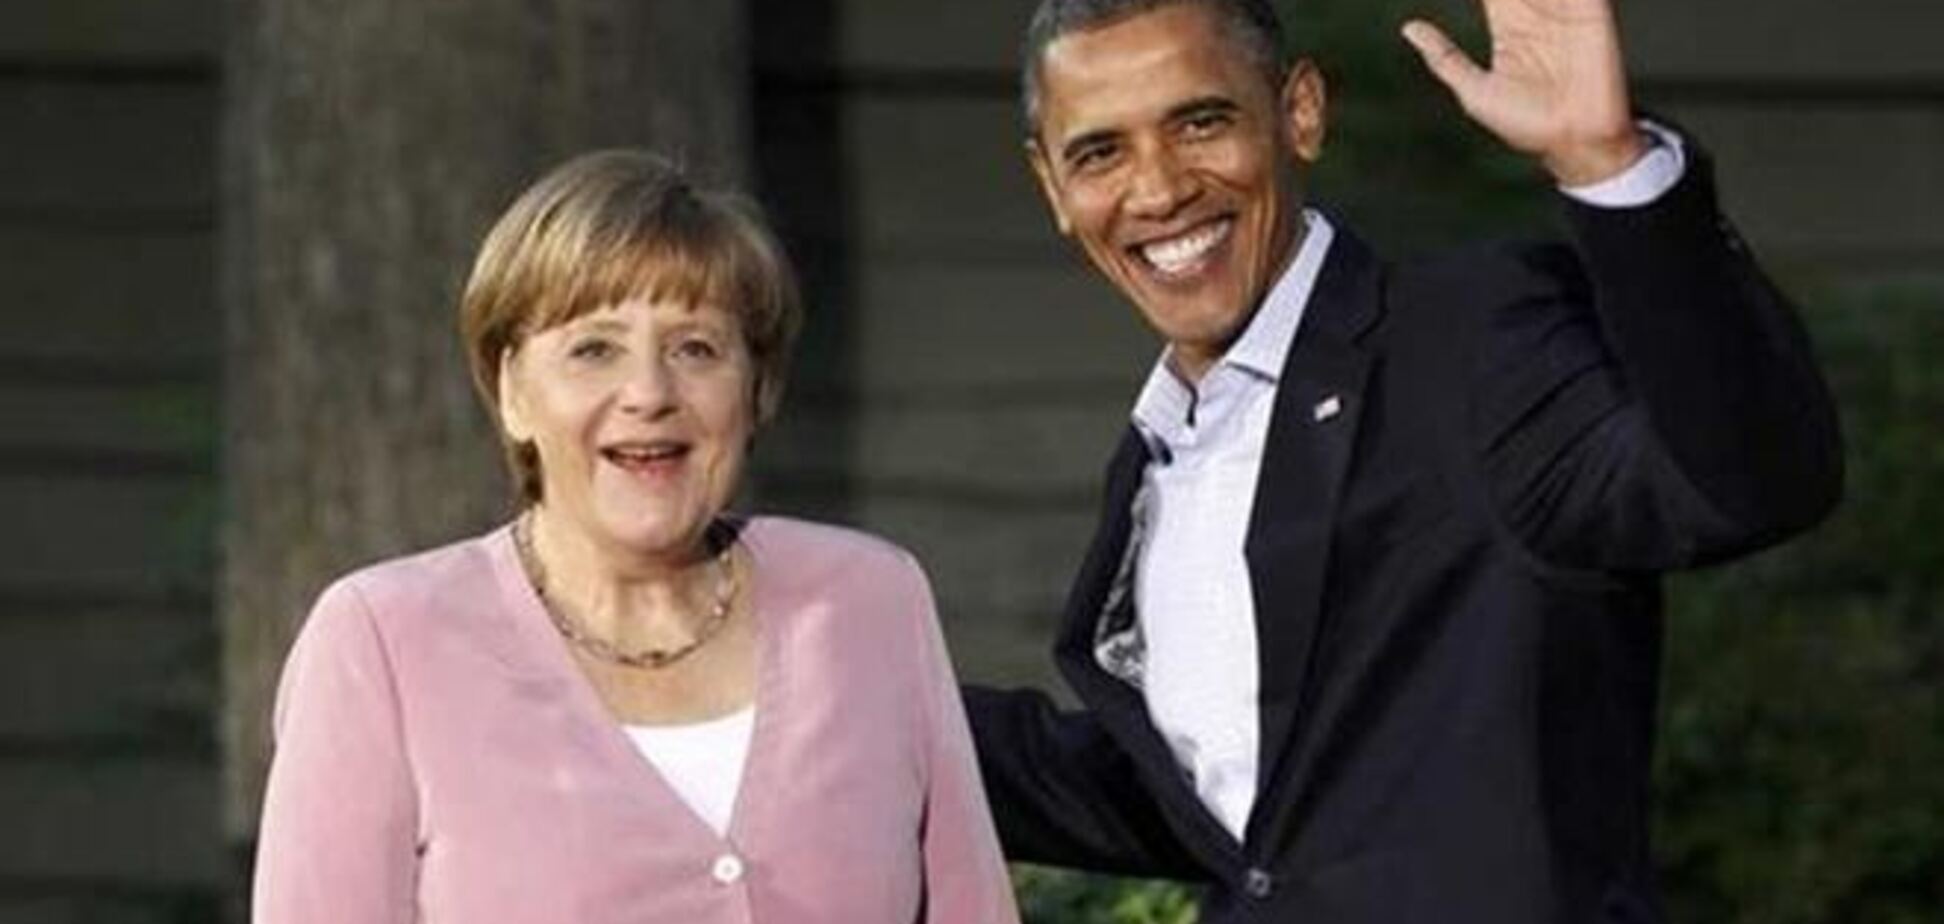 АНБ: Обама не знав про прослуховування Меркель